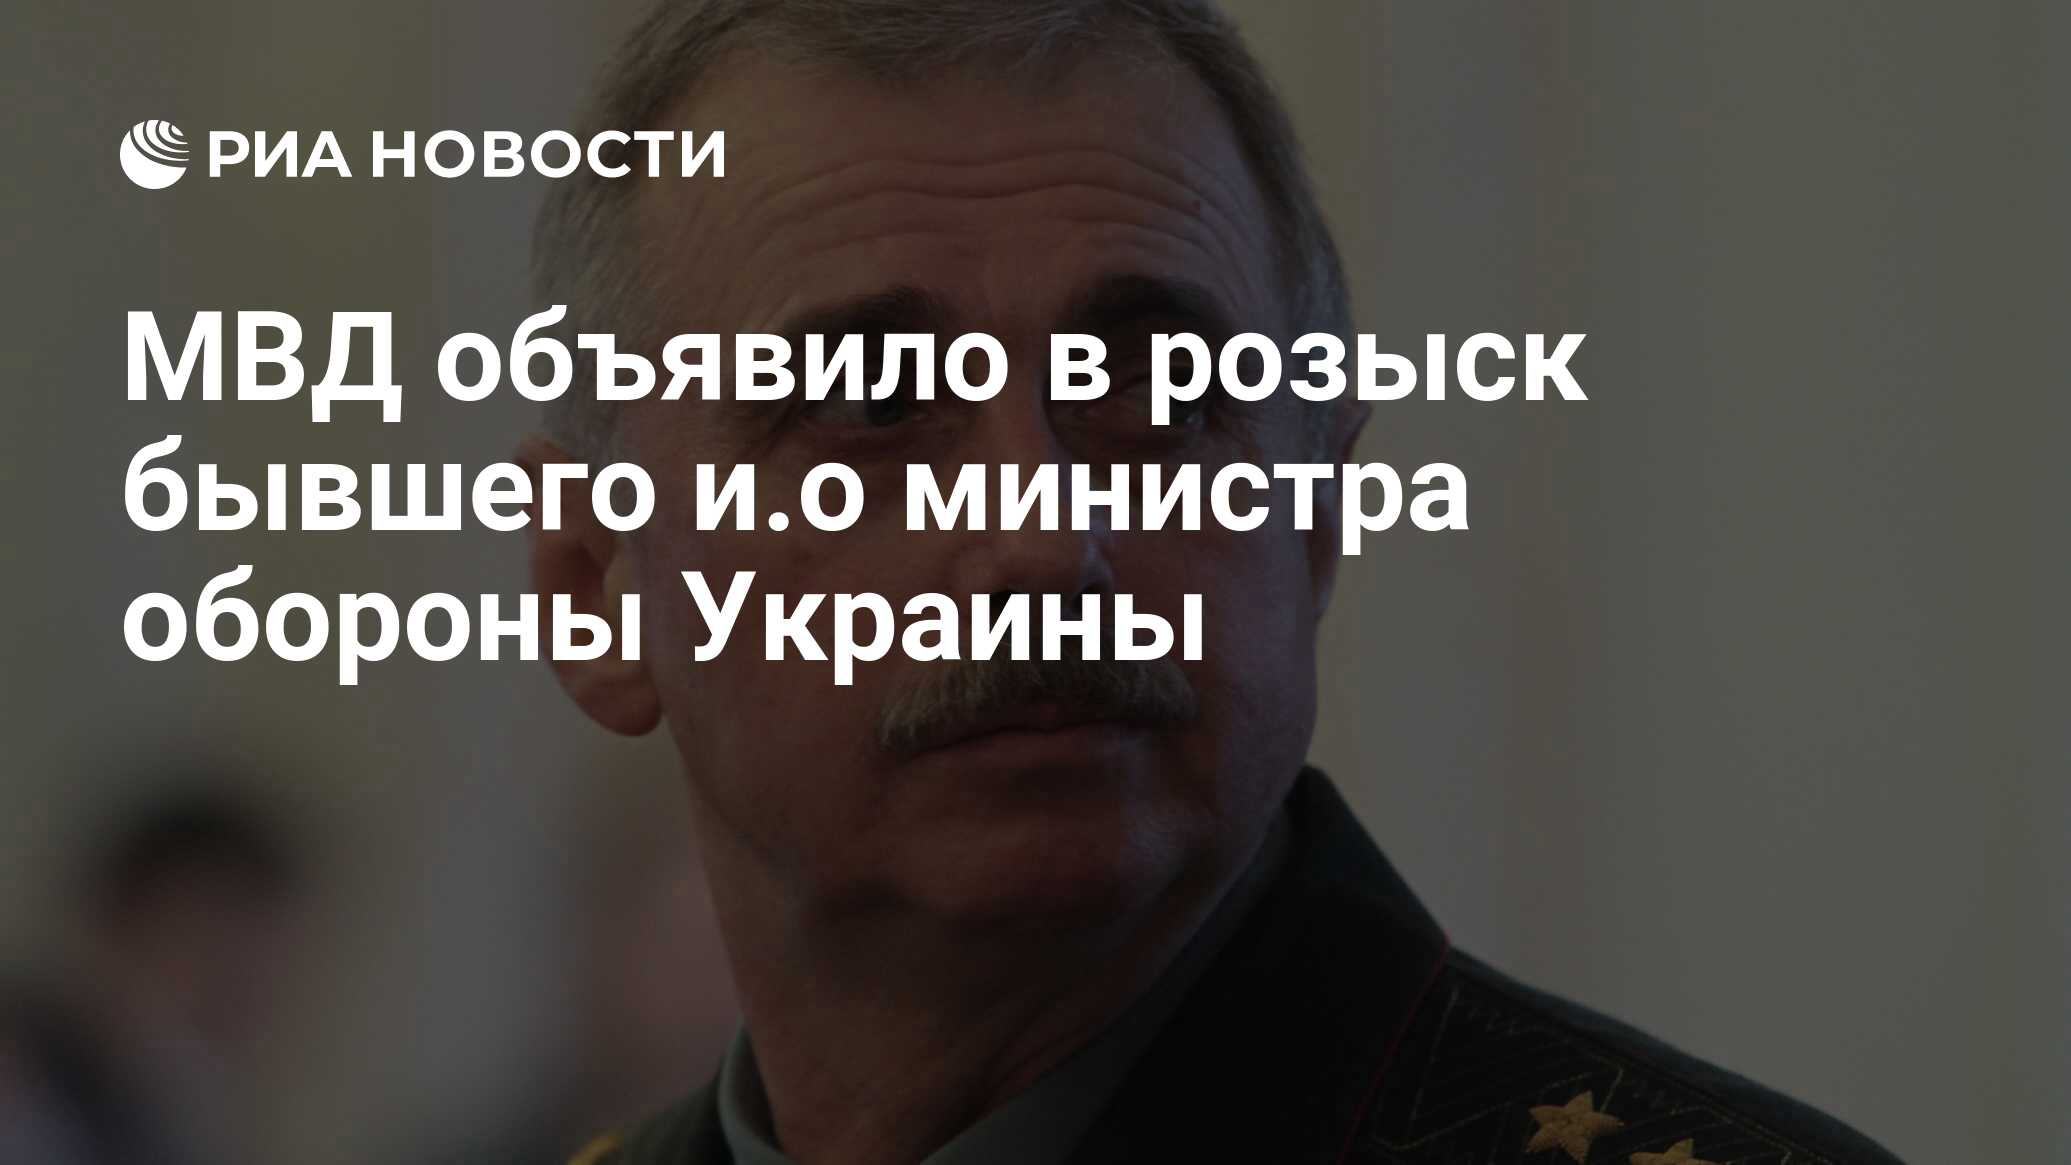 МВД объявило в розыск бывшего и.о министра обороны Украины